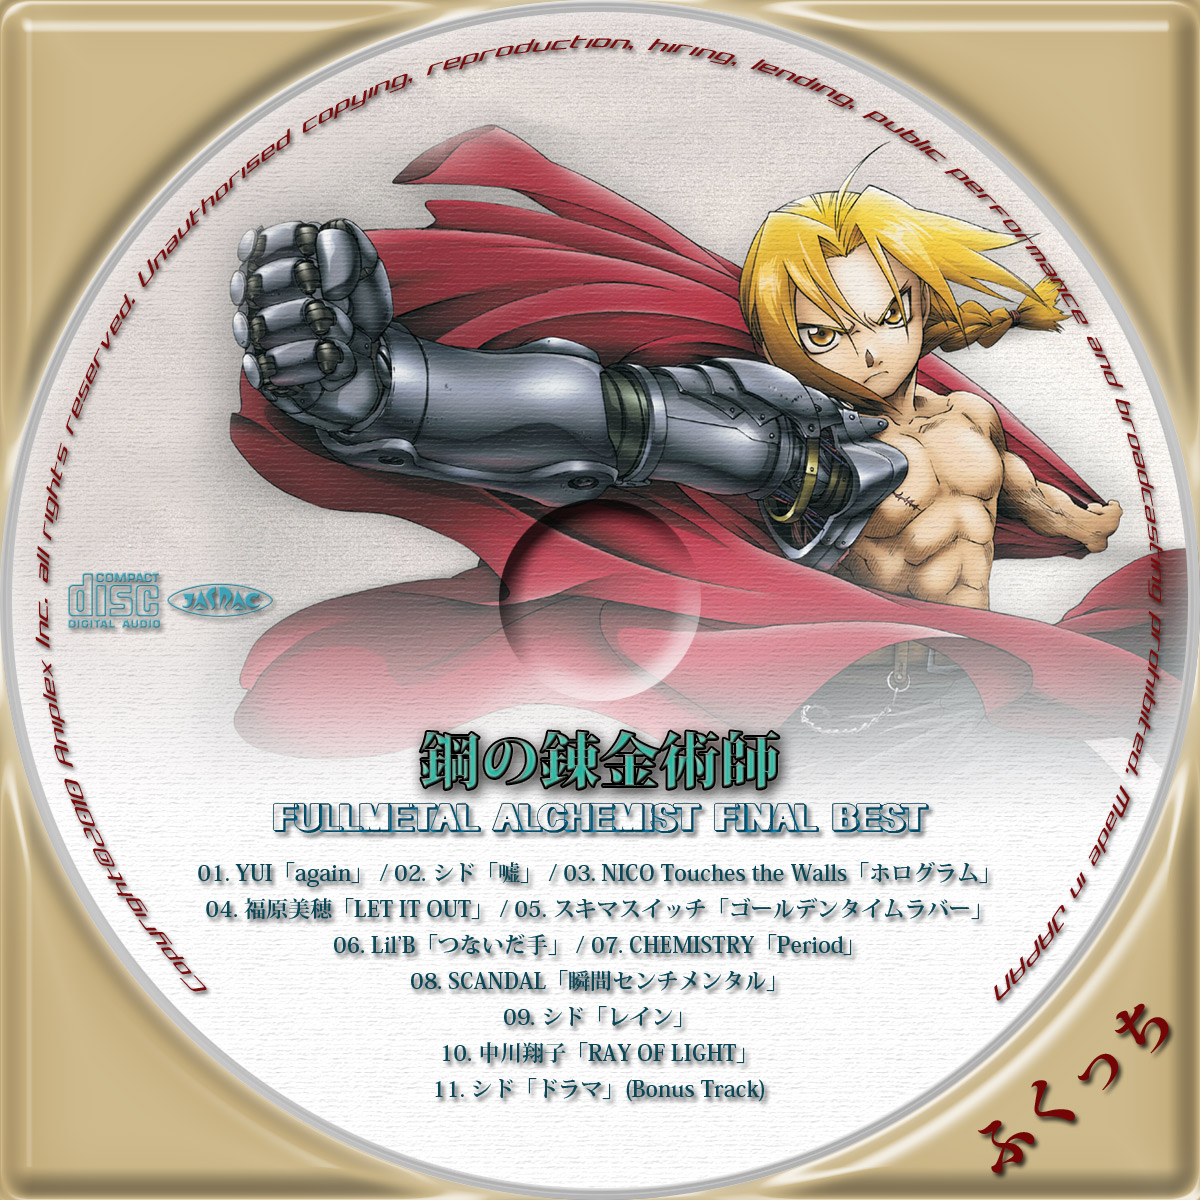 鋼の錬金術師 Fullmetal Alchemist Final Best ふくっちの音楽cd Dvdカスタムレーベル